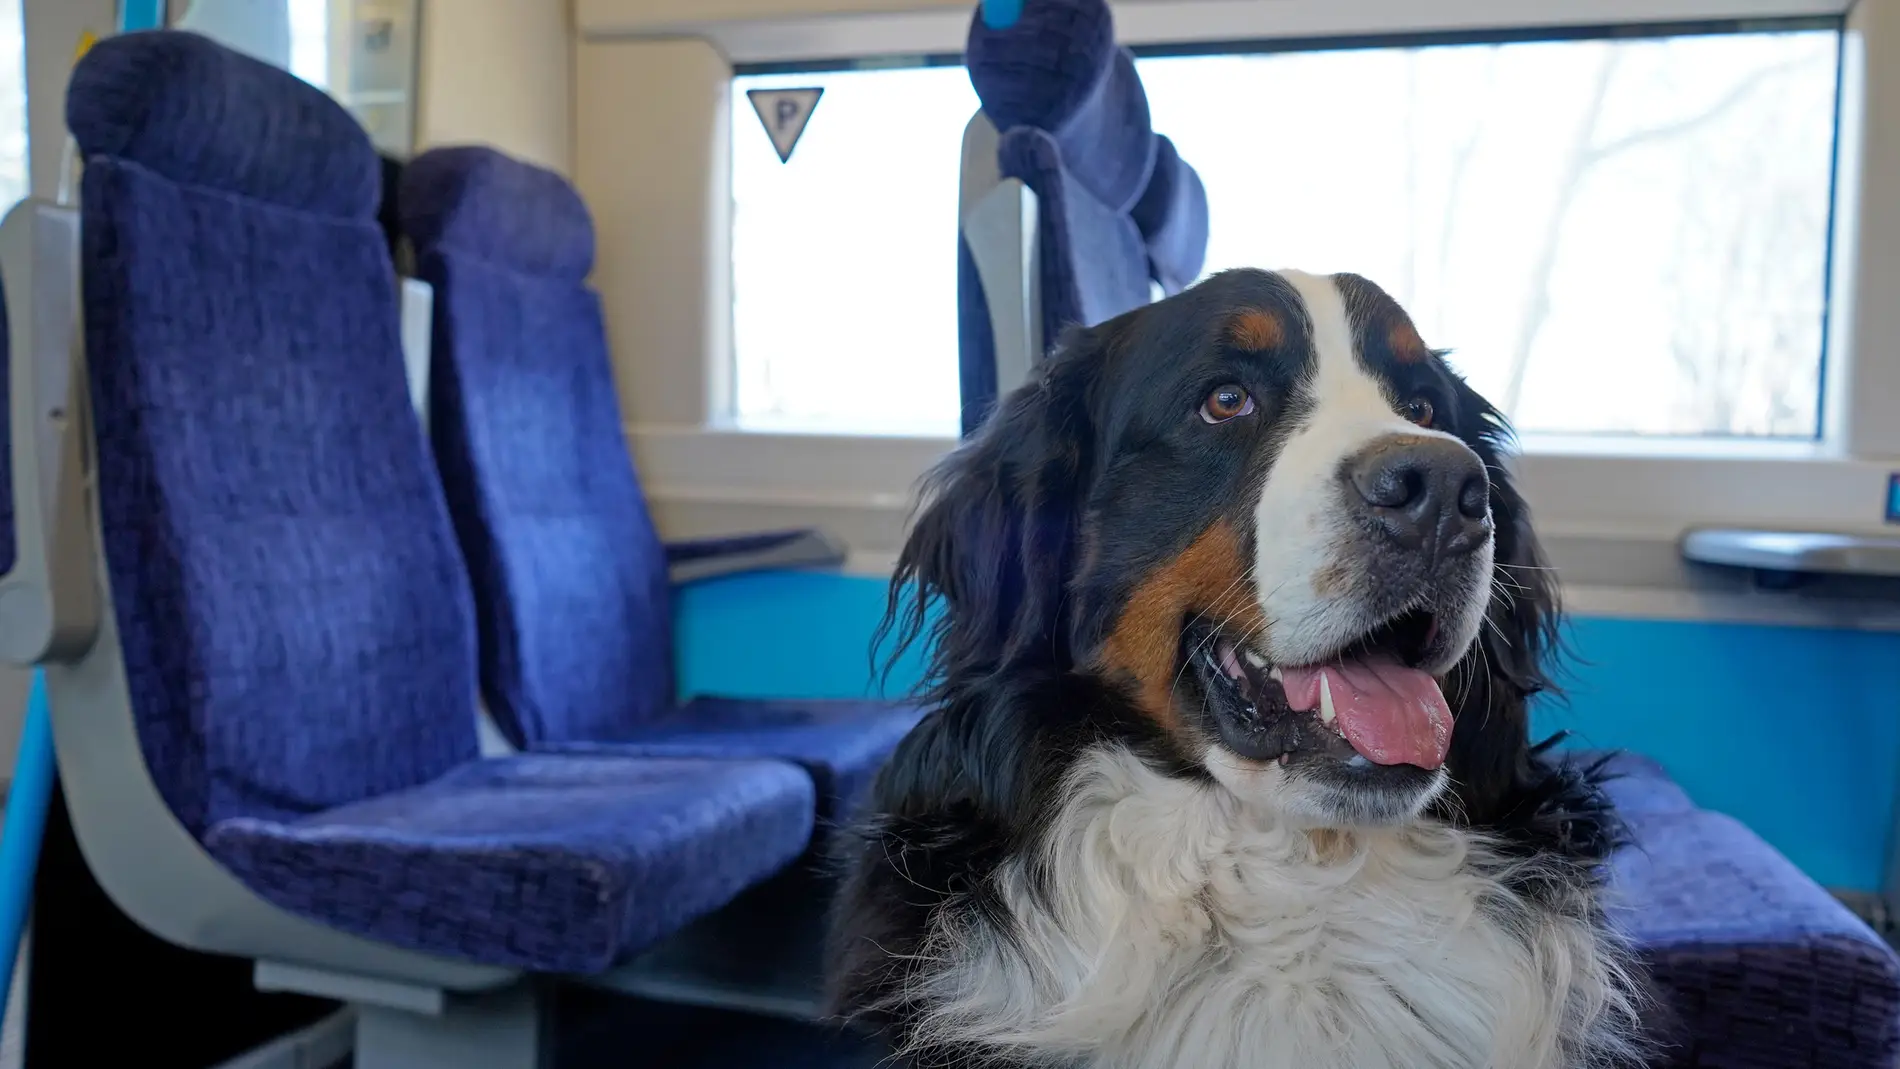 Perro en un tren